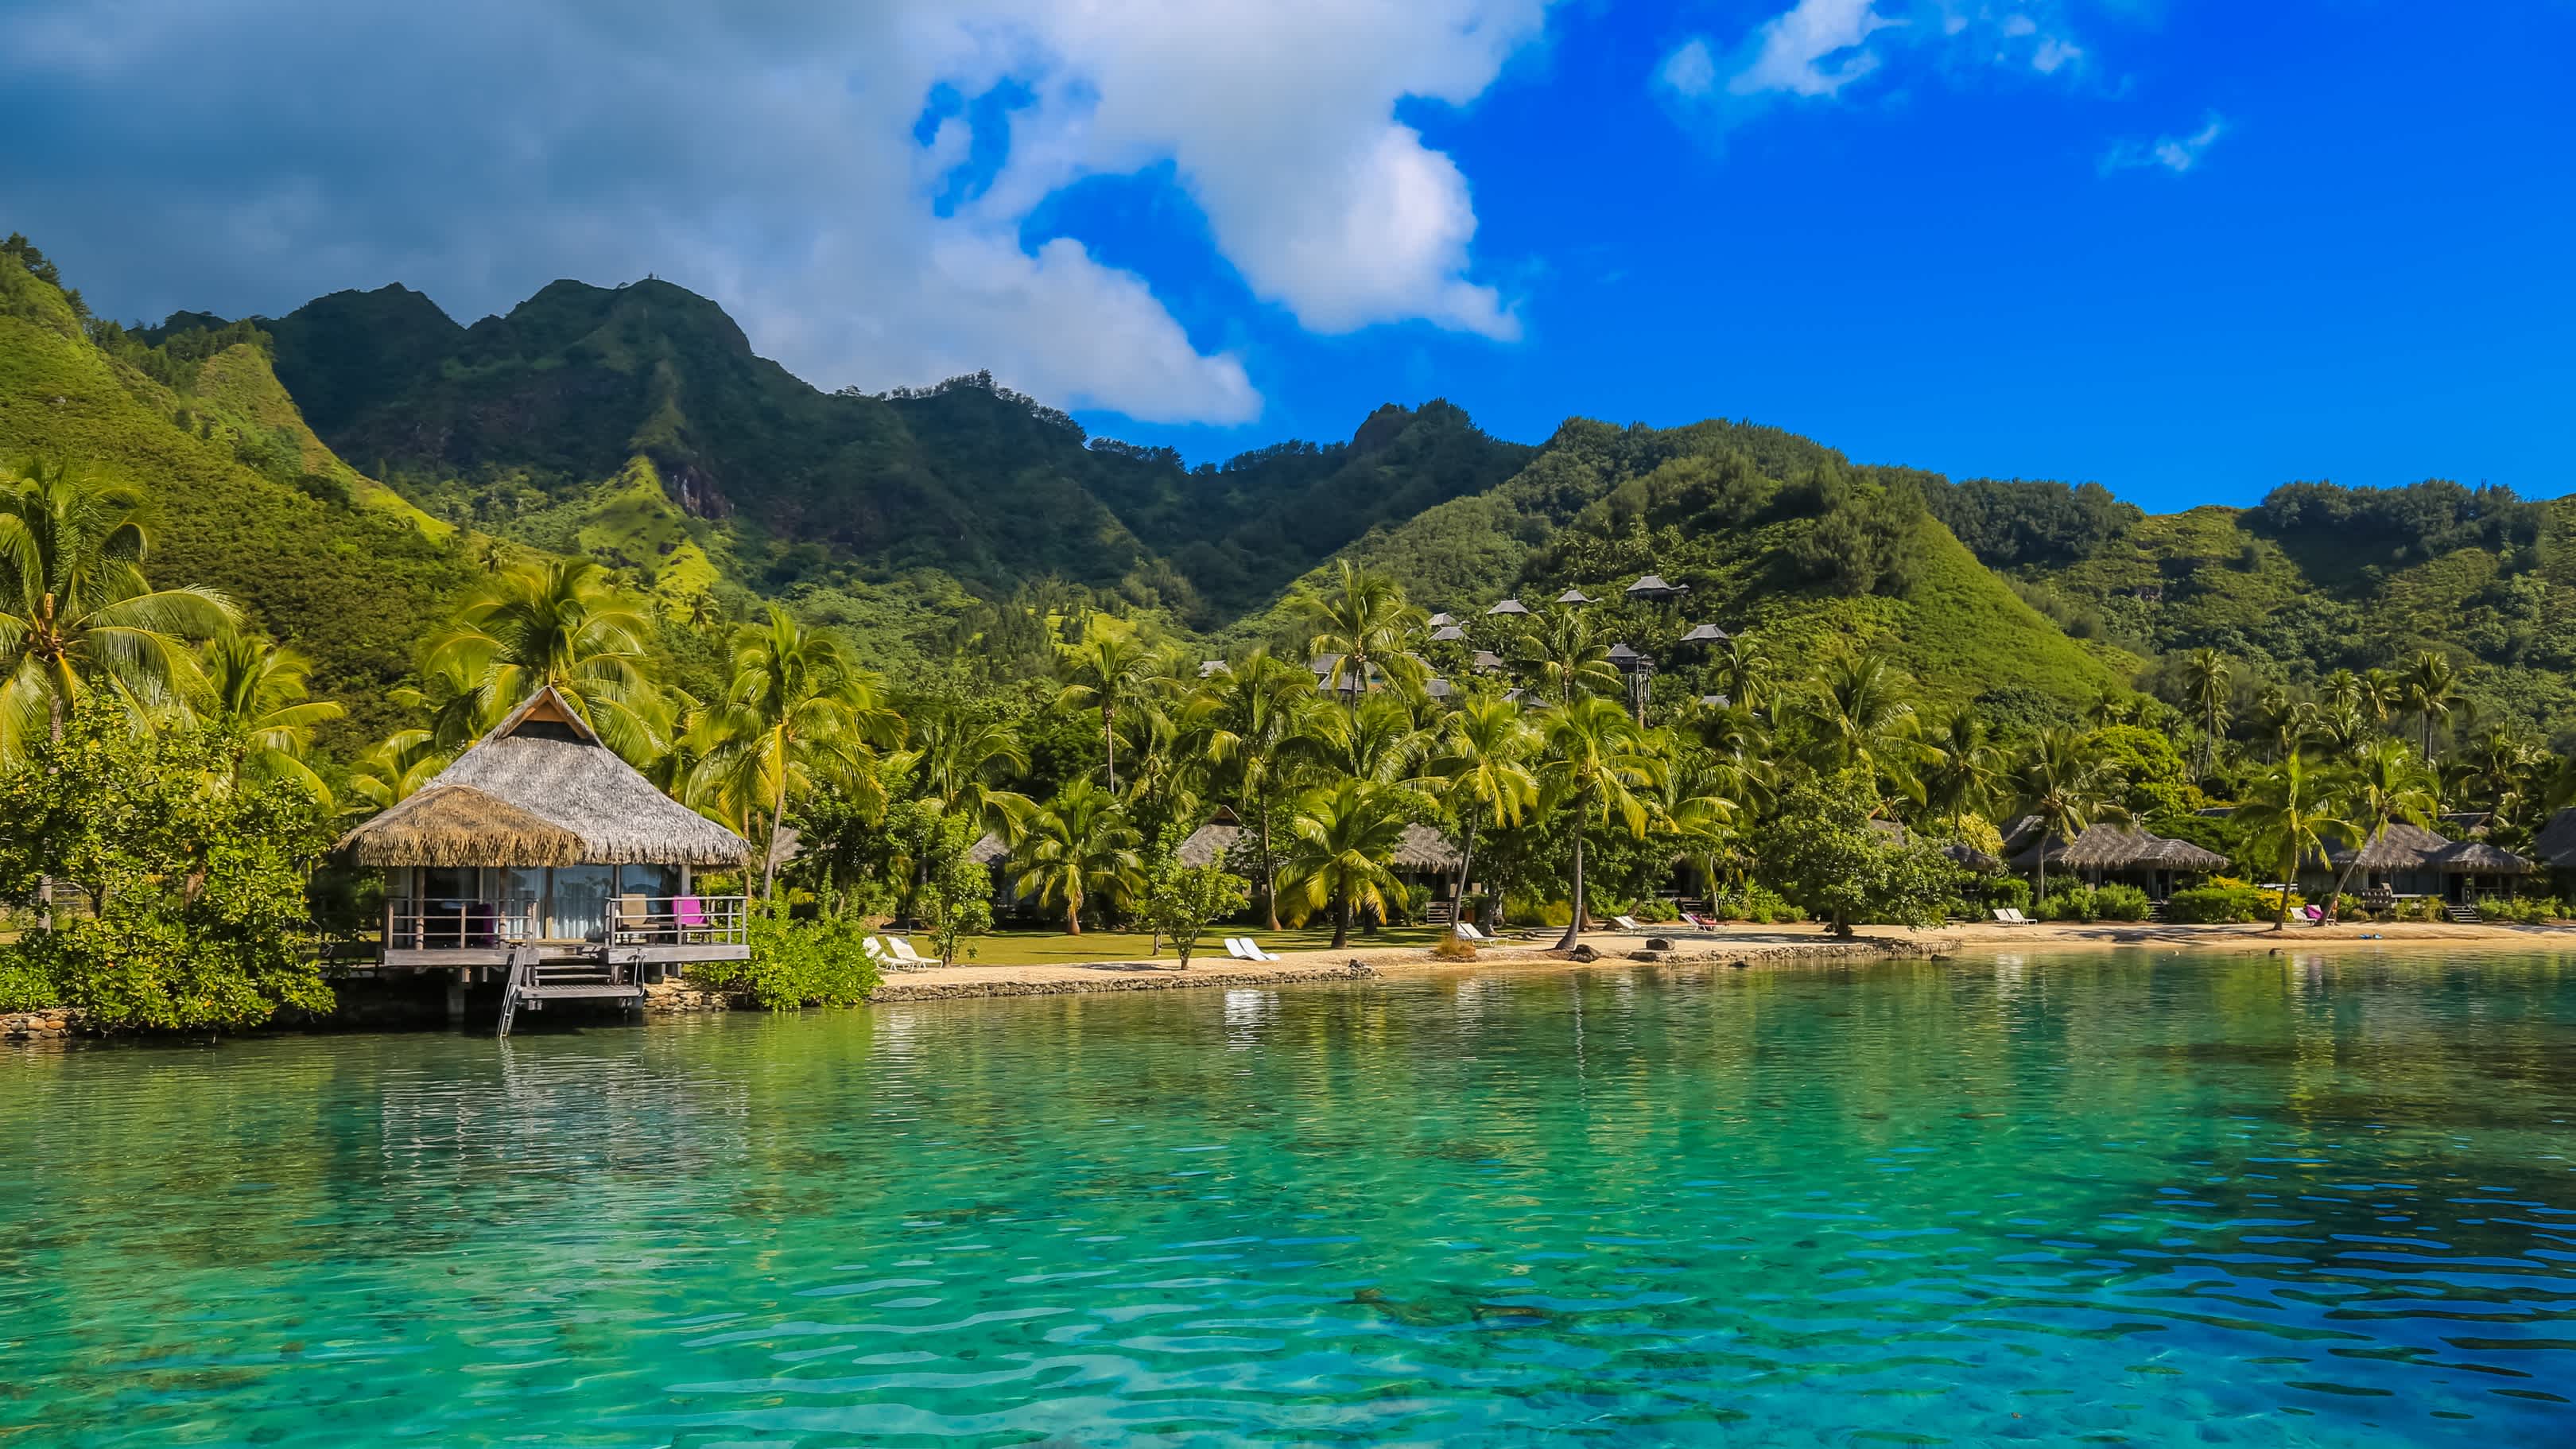 Blick zu türkisfarbenen Lagune und Bergen auf Insel Moorea in Französisch-Polynesien.

